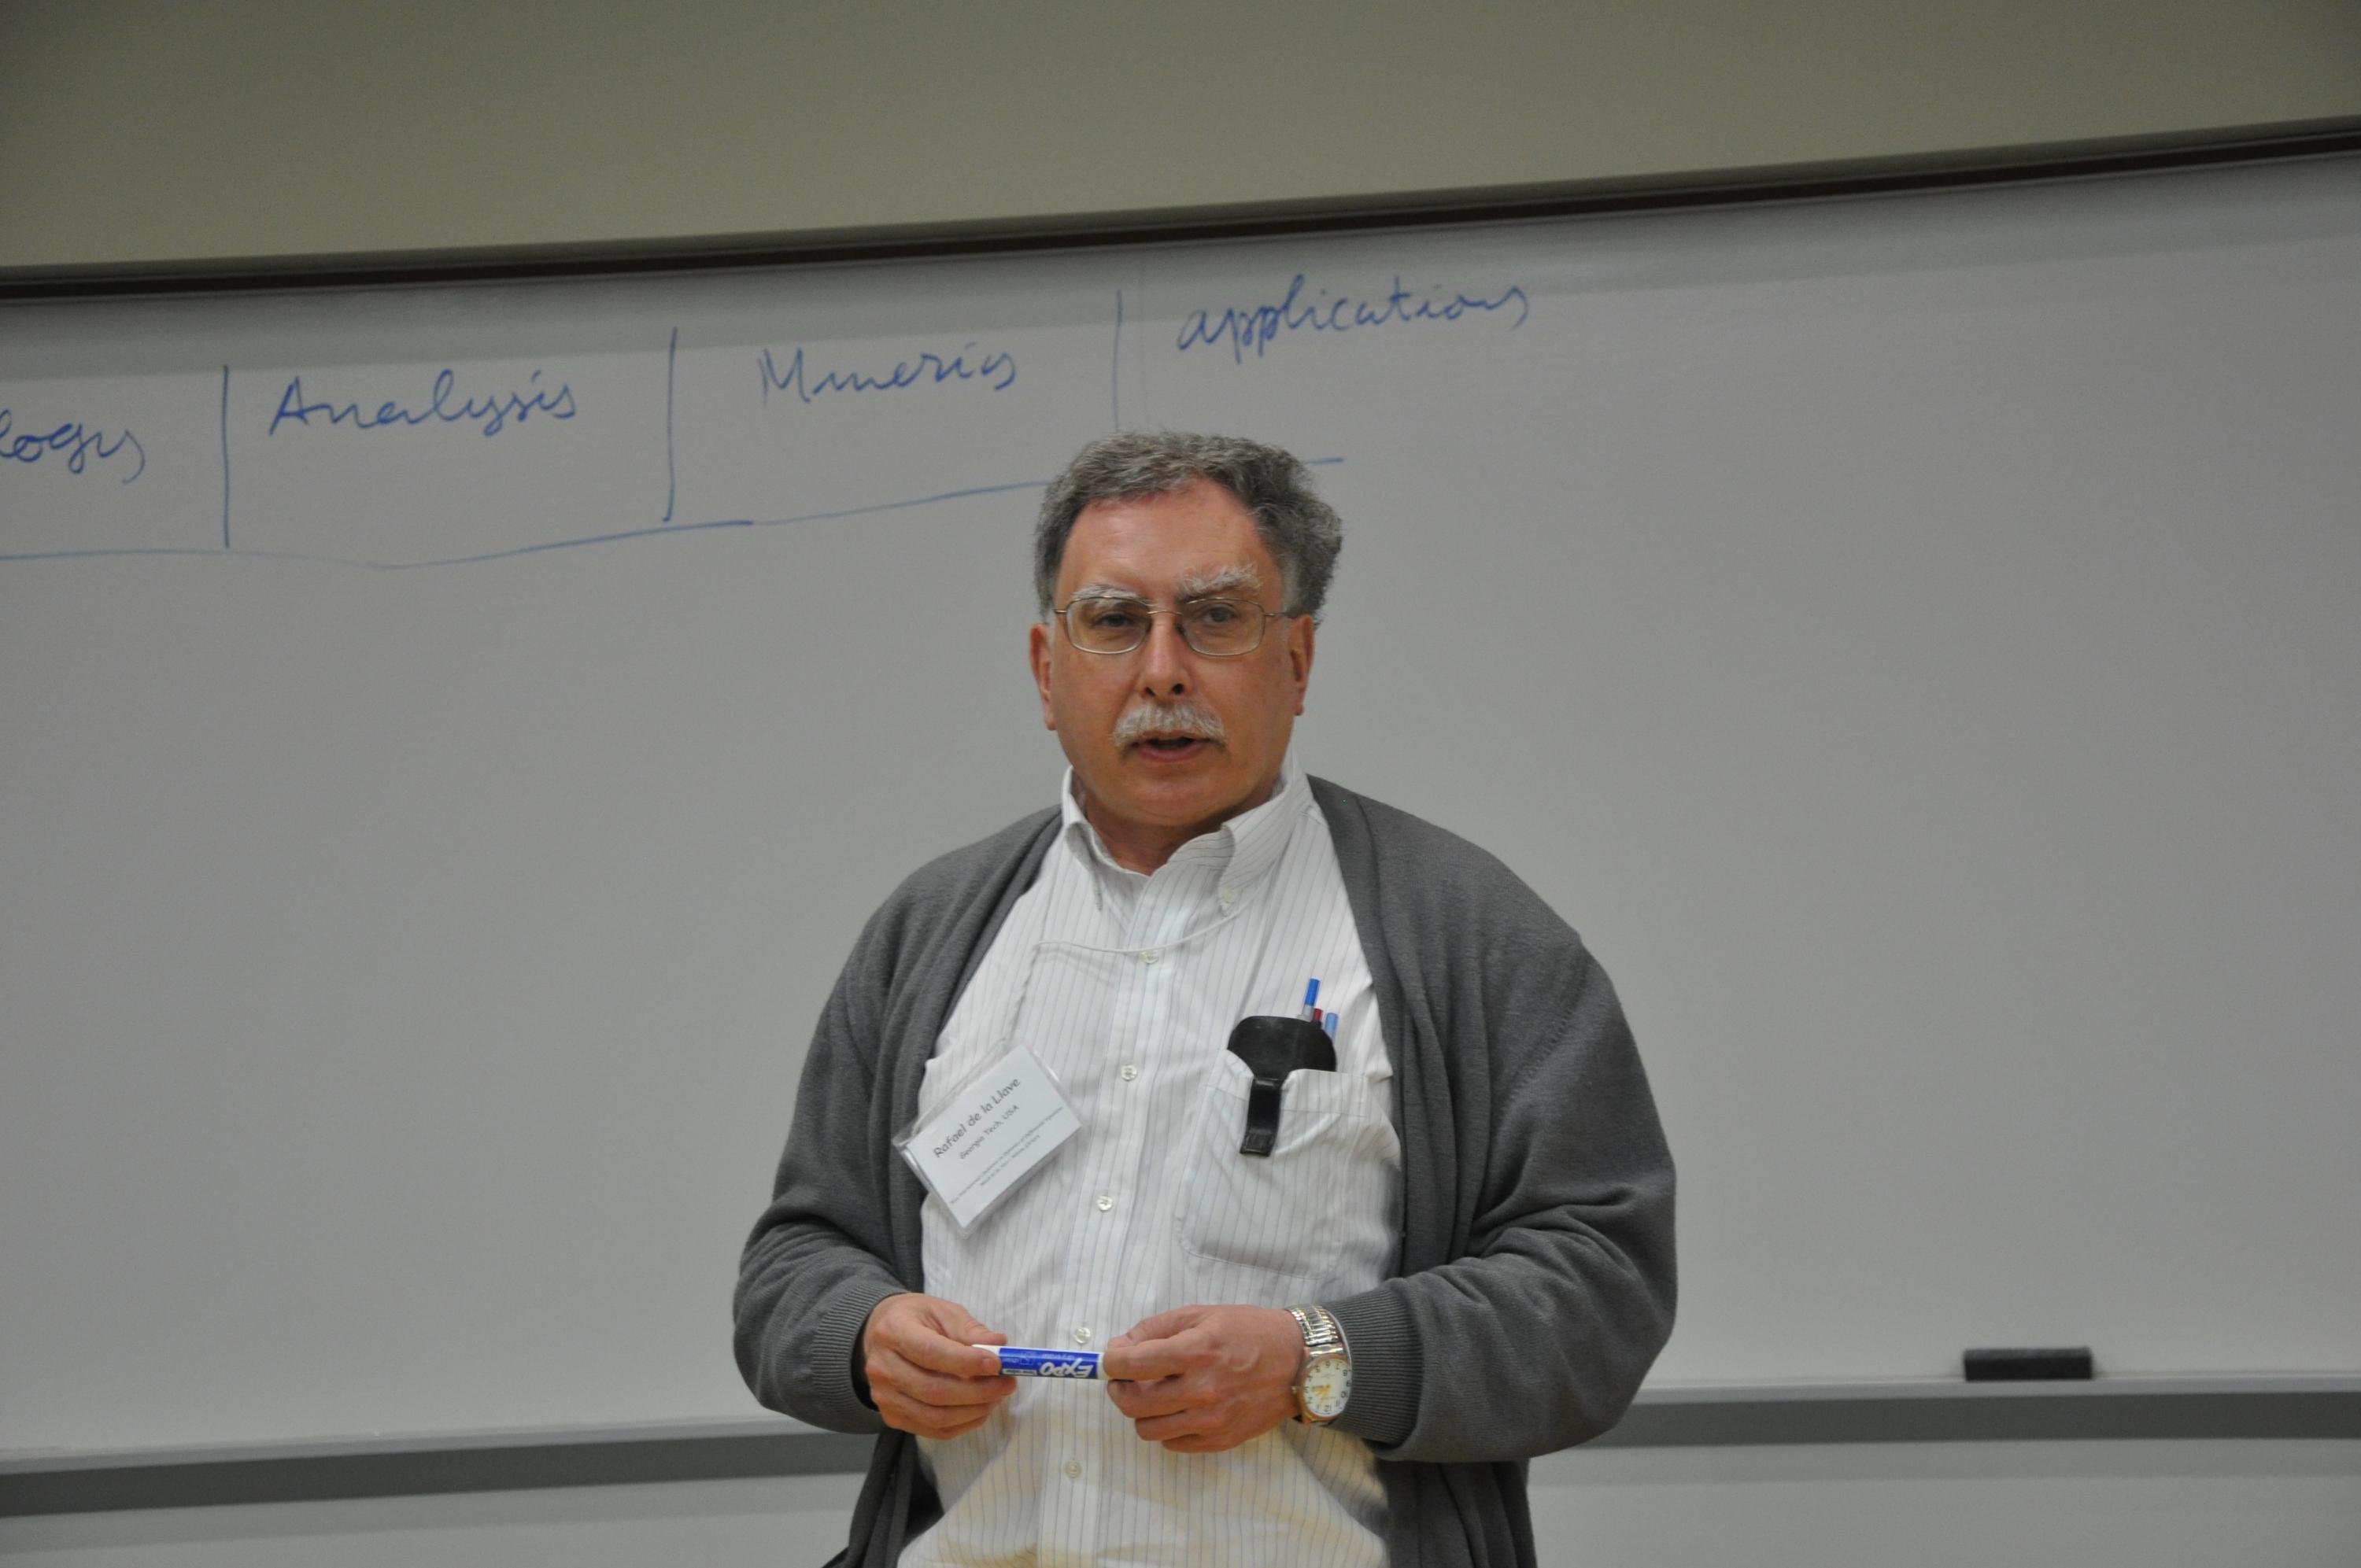 Rafael de la Llave in the classroom